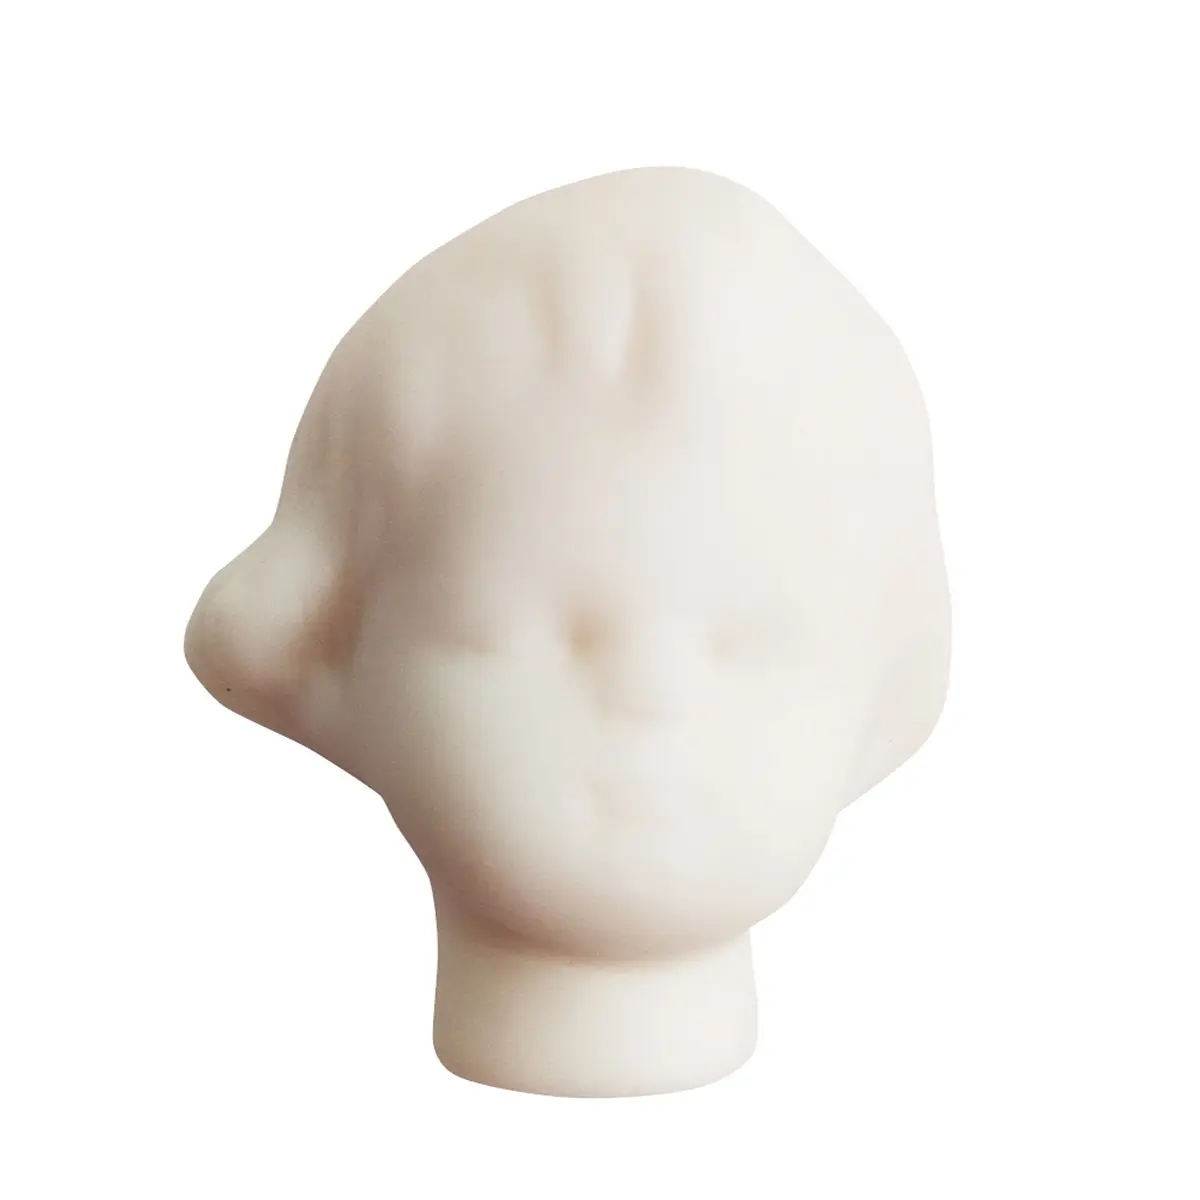 Фарфоровые заготовки для изготовления кукол (голова), размер 3 см, оптовые цены, фарфоровые детали для кукол